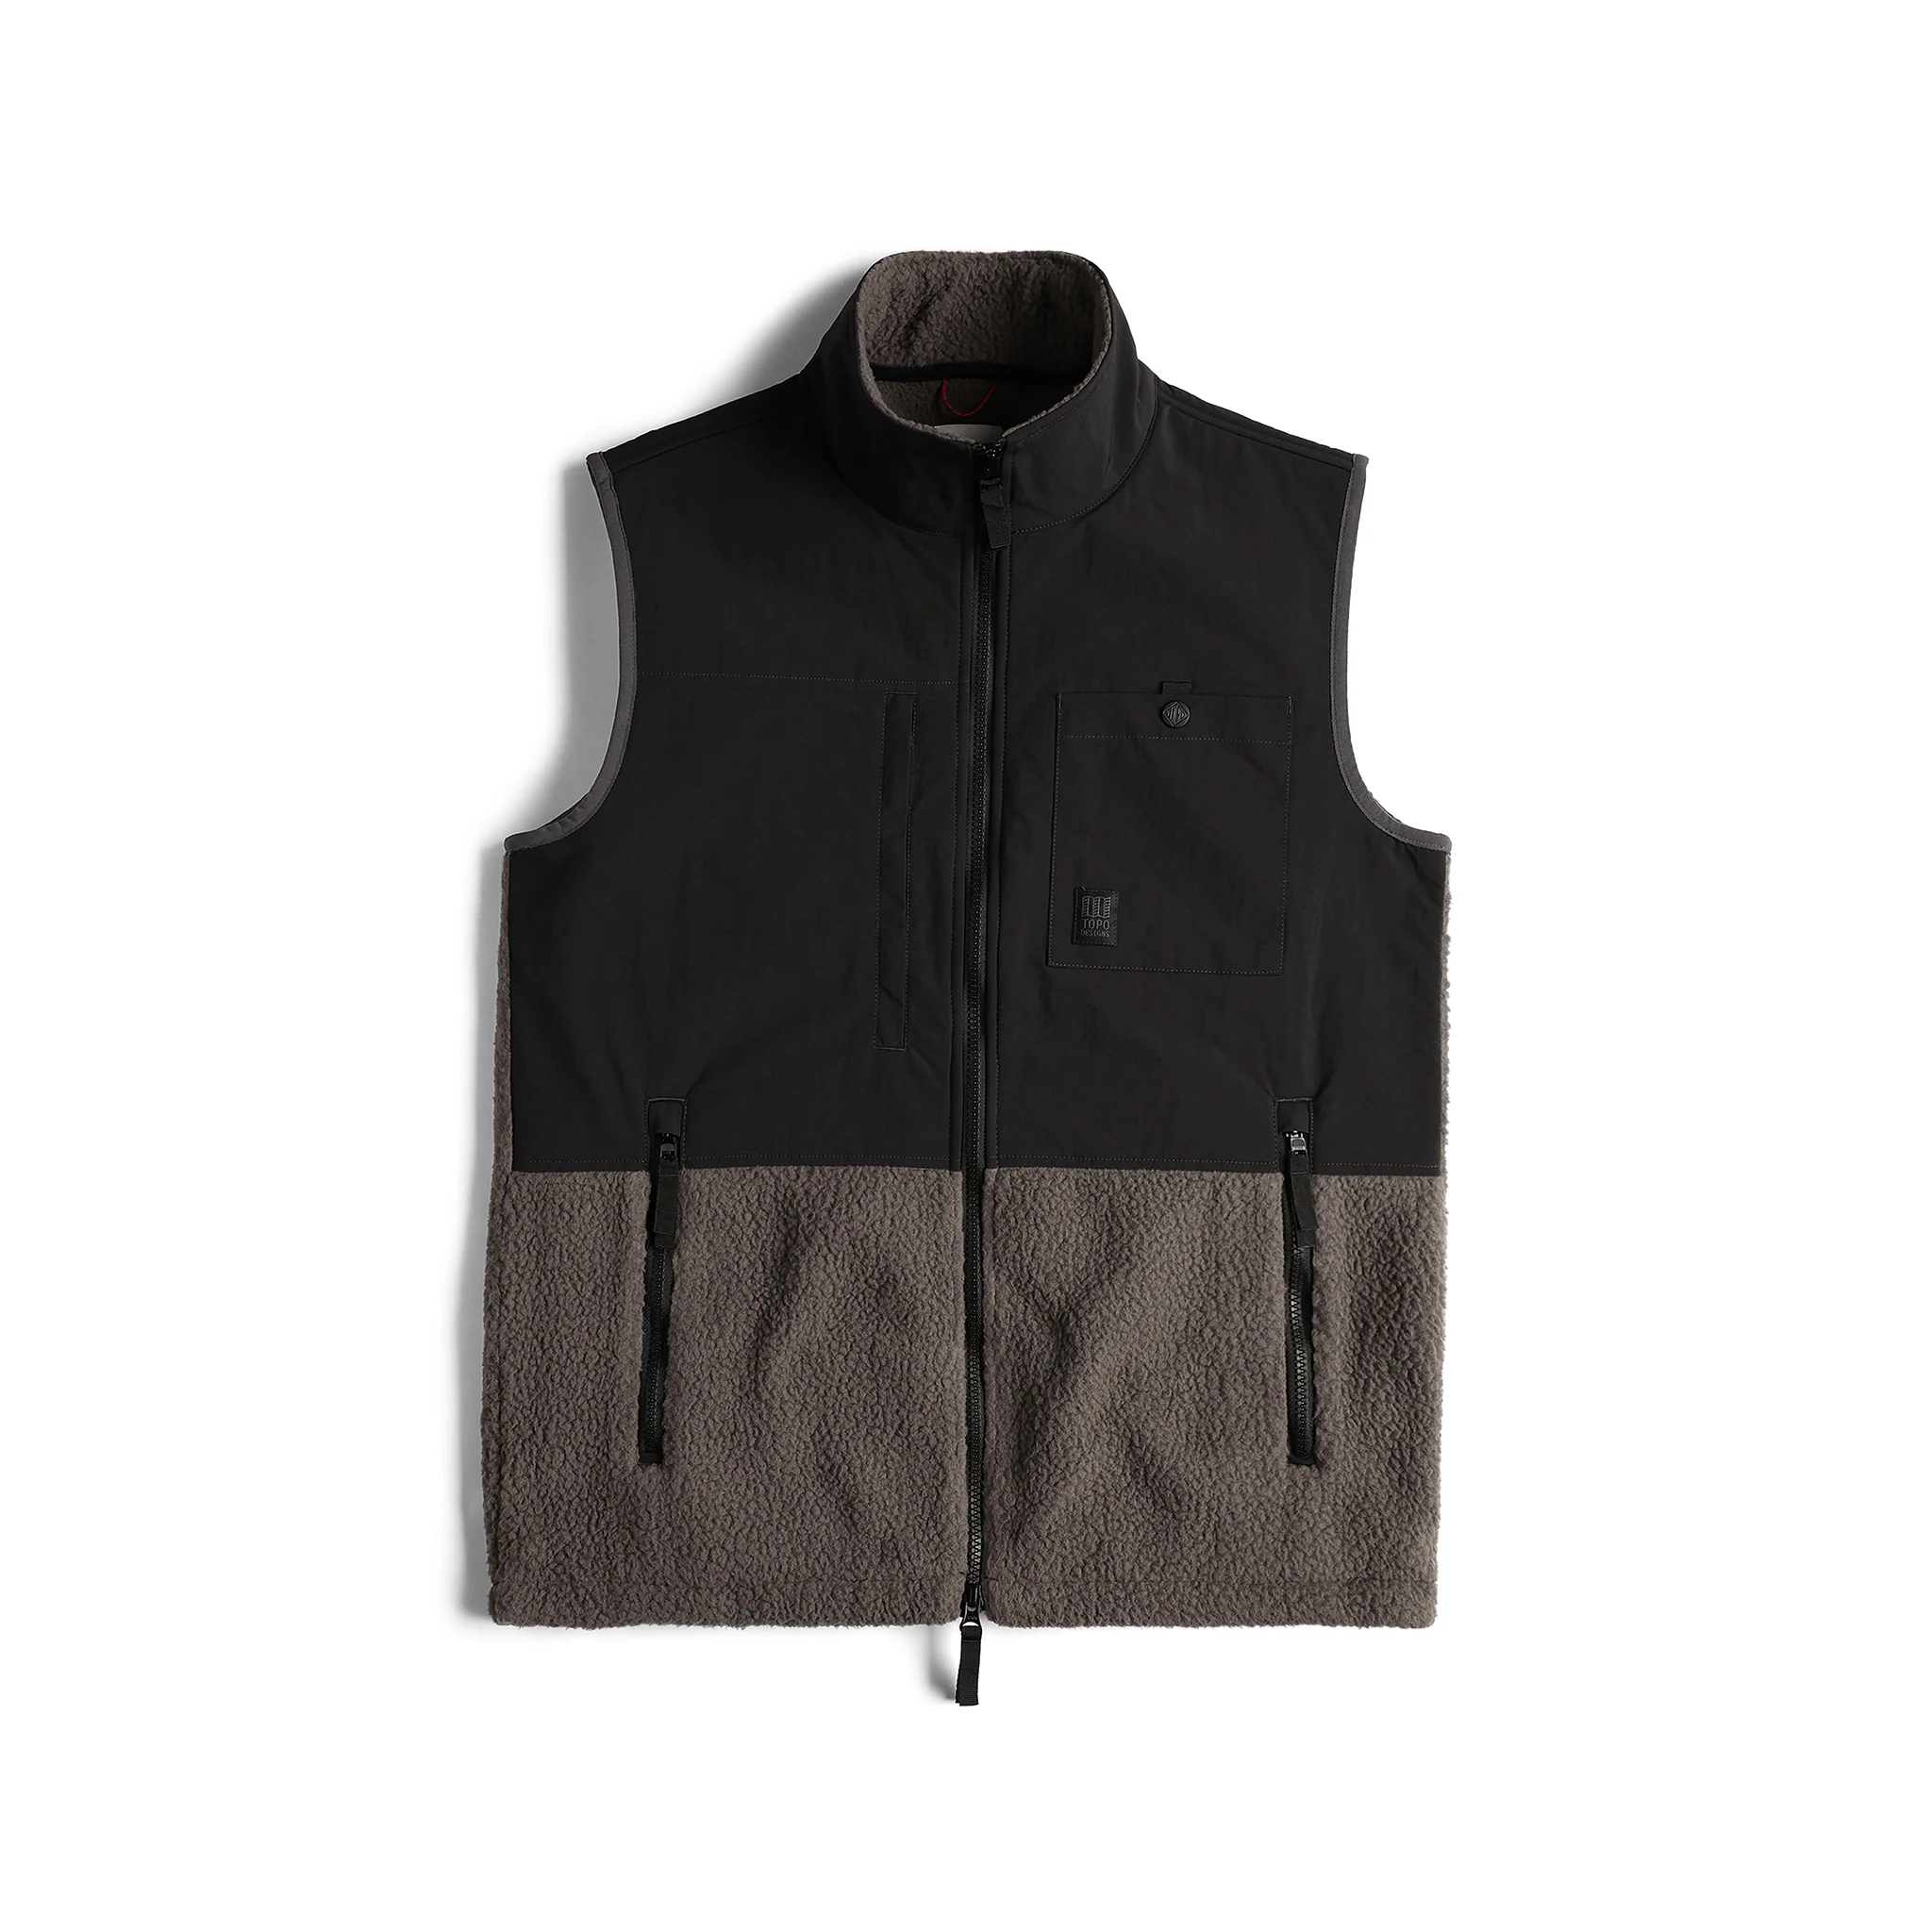 Sweater Fleece Vest (Men's)